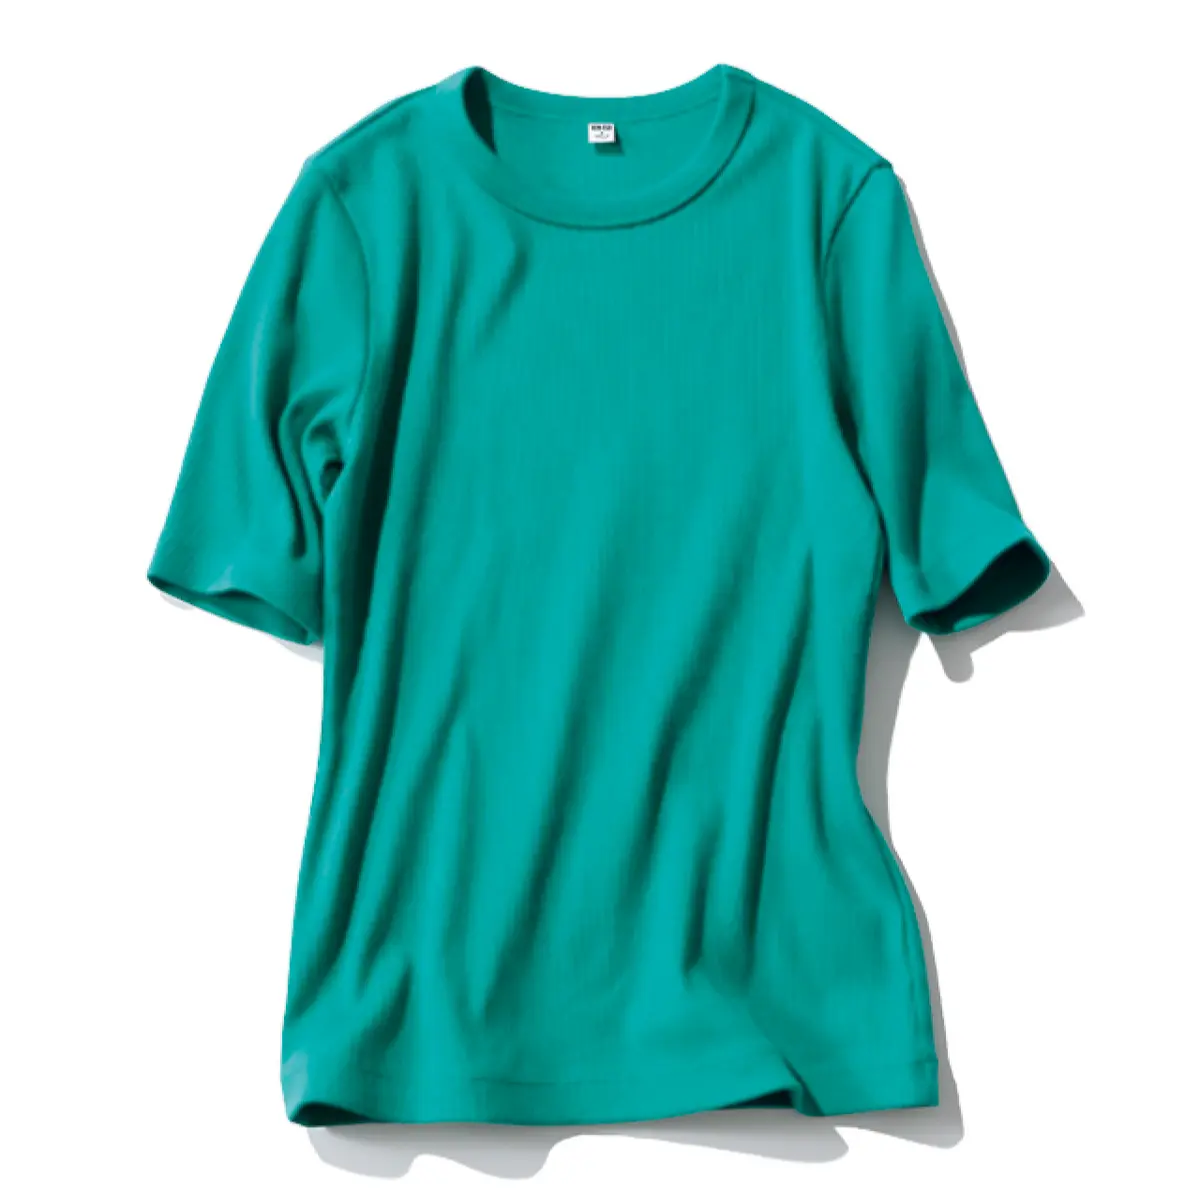 ユニクロのグリーンTシャツ